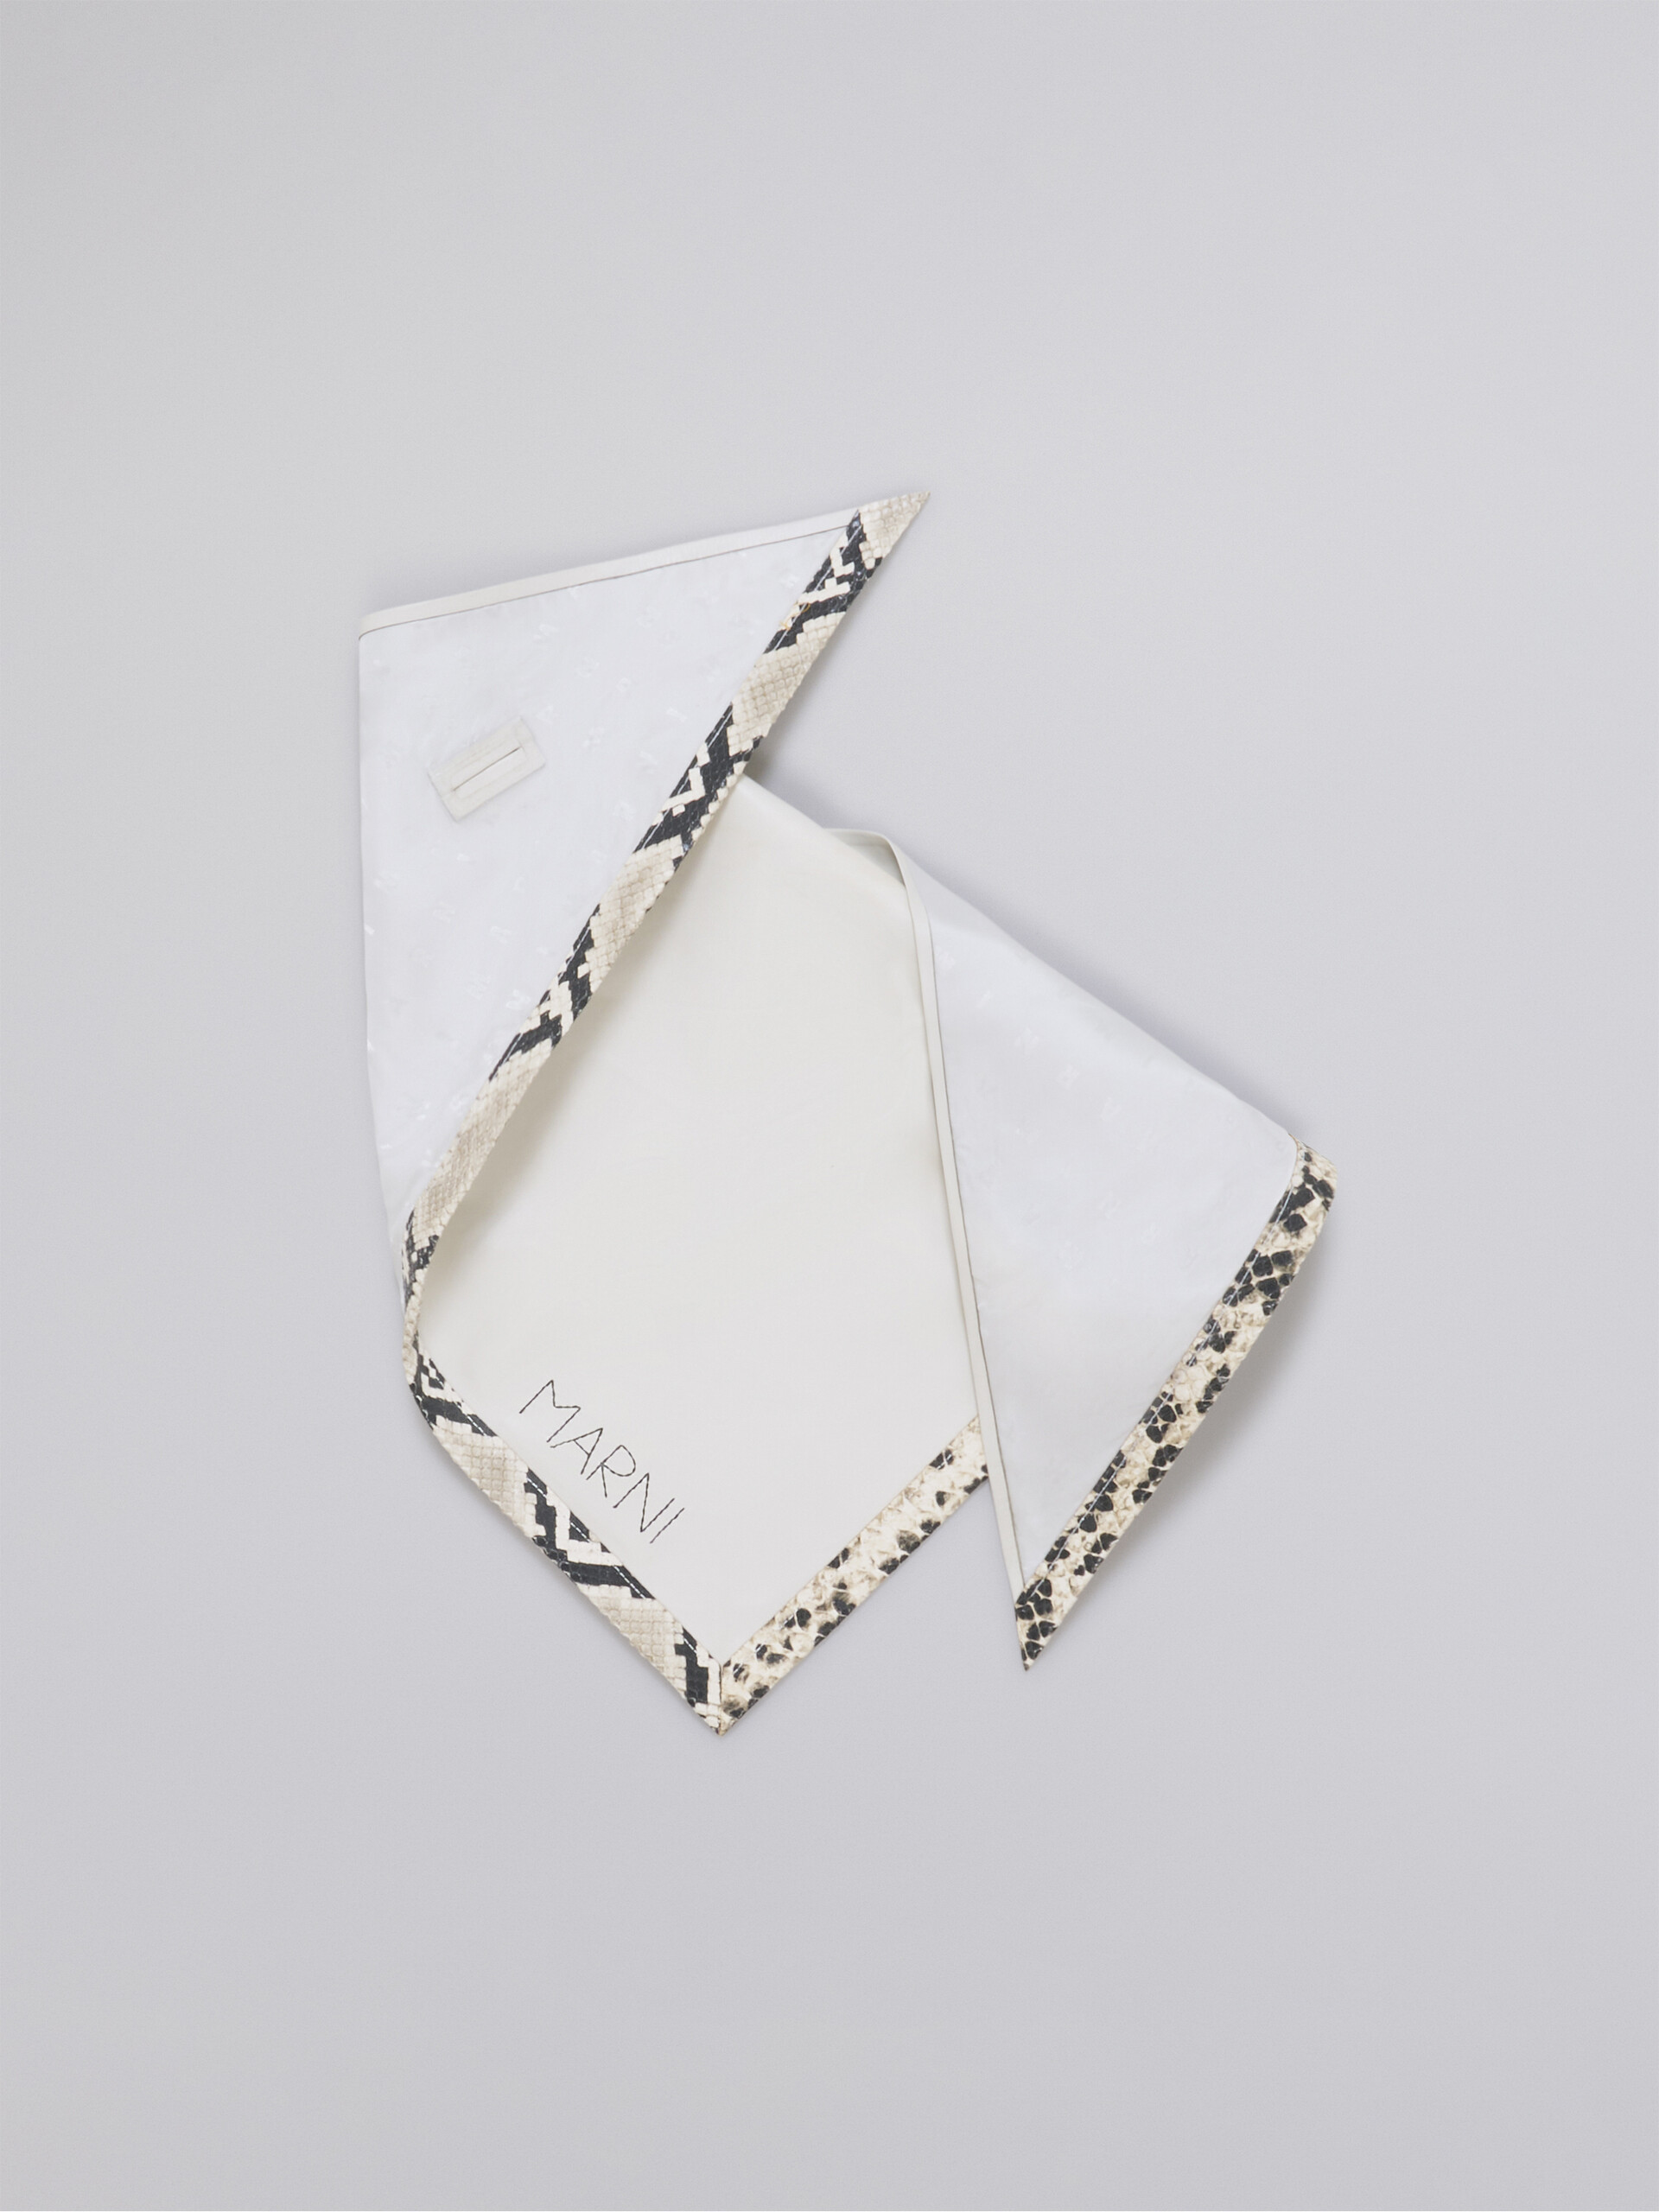 Sciarpa triangolare in nappa bianco con bordo in pitone stampato - Altri accessori - Image 1